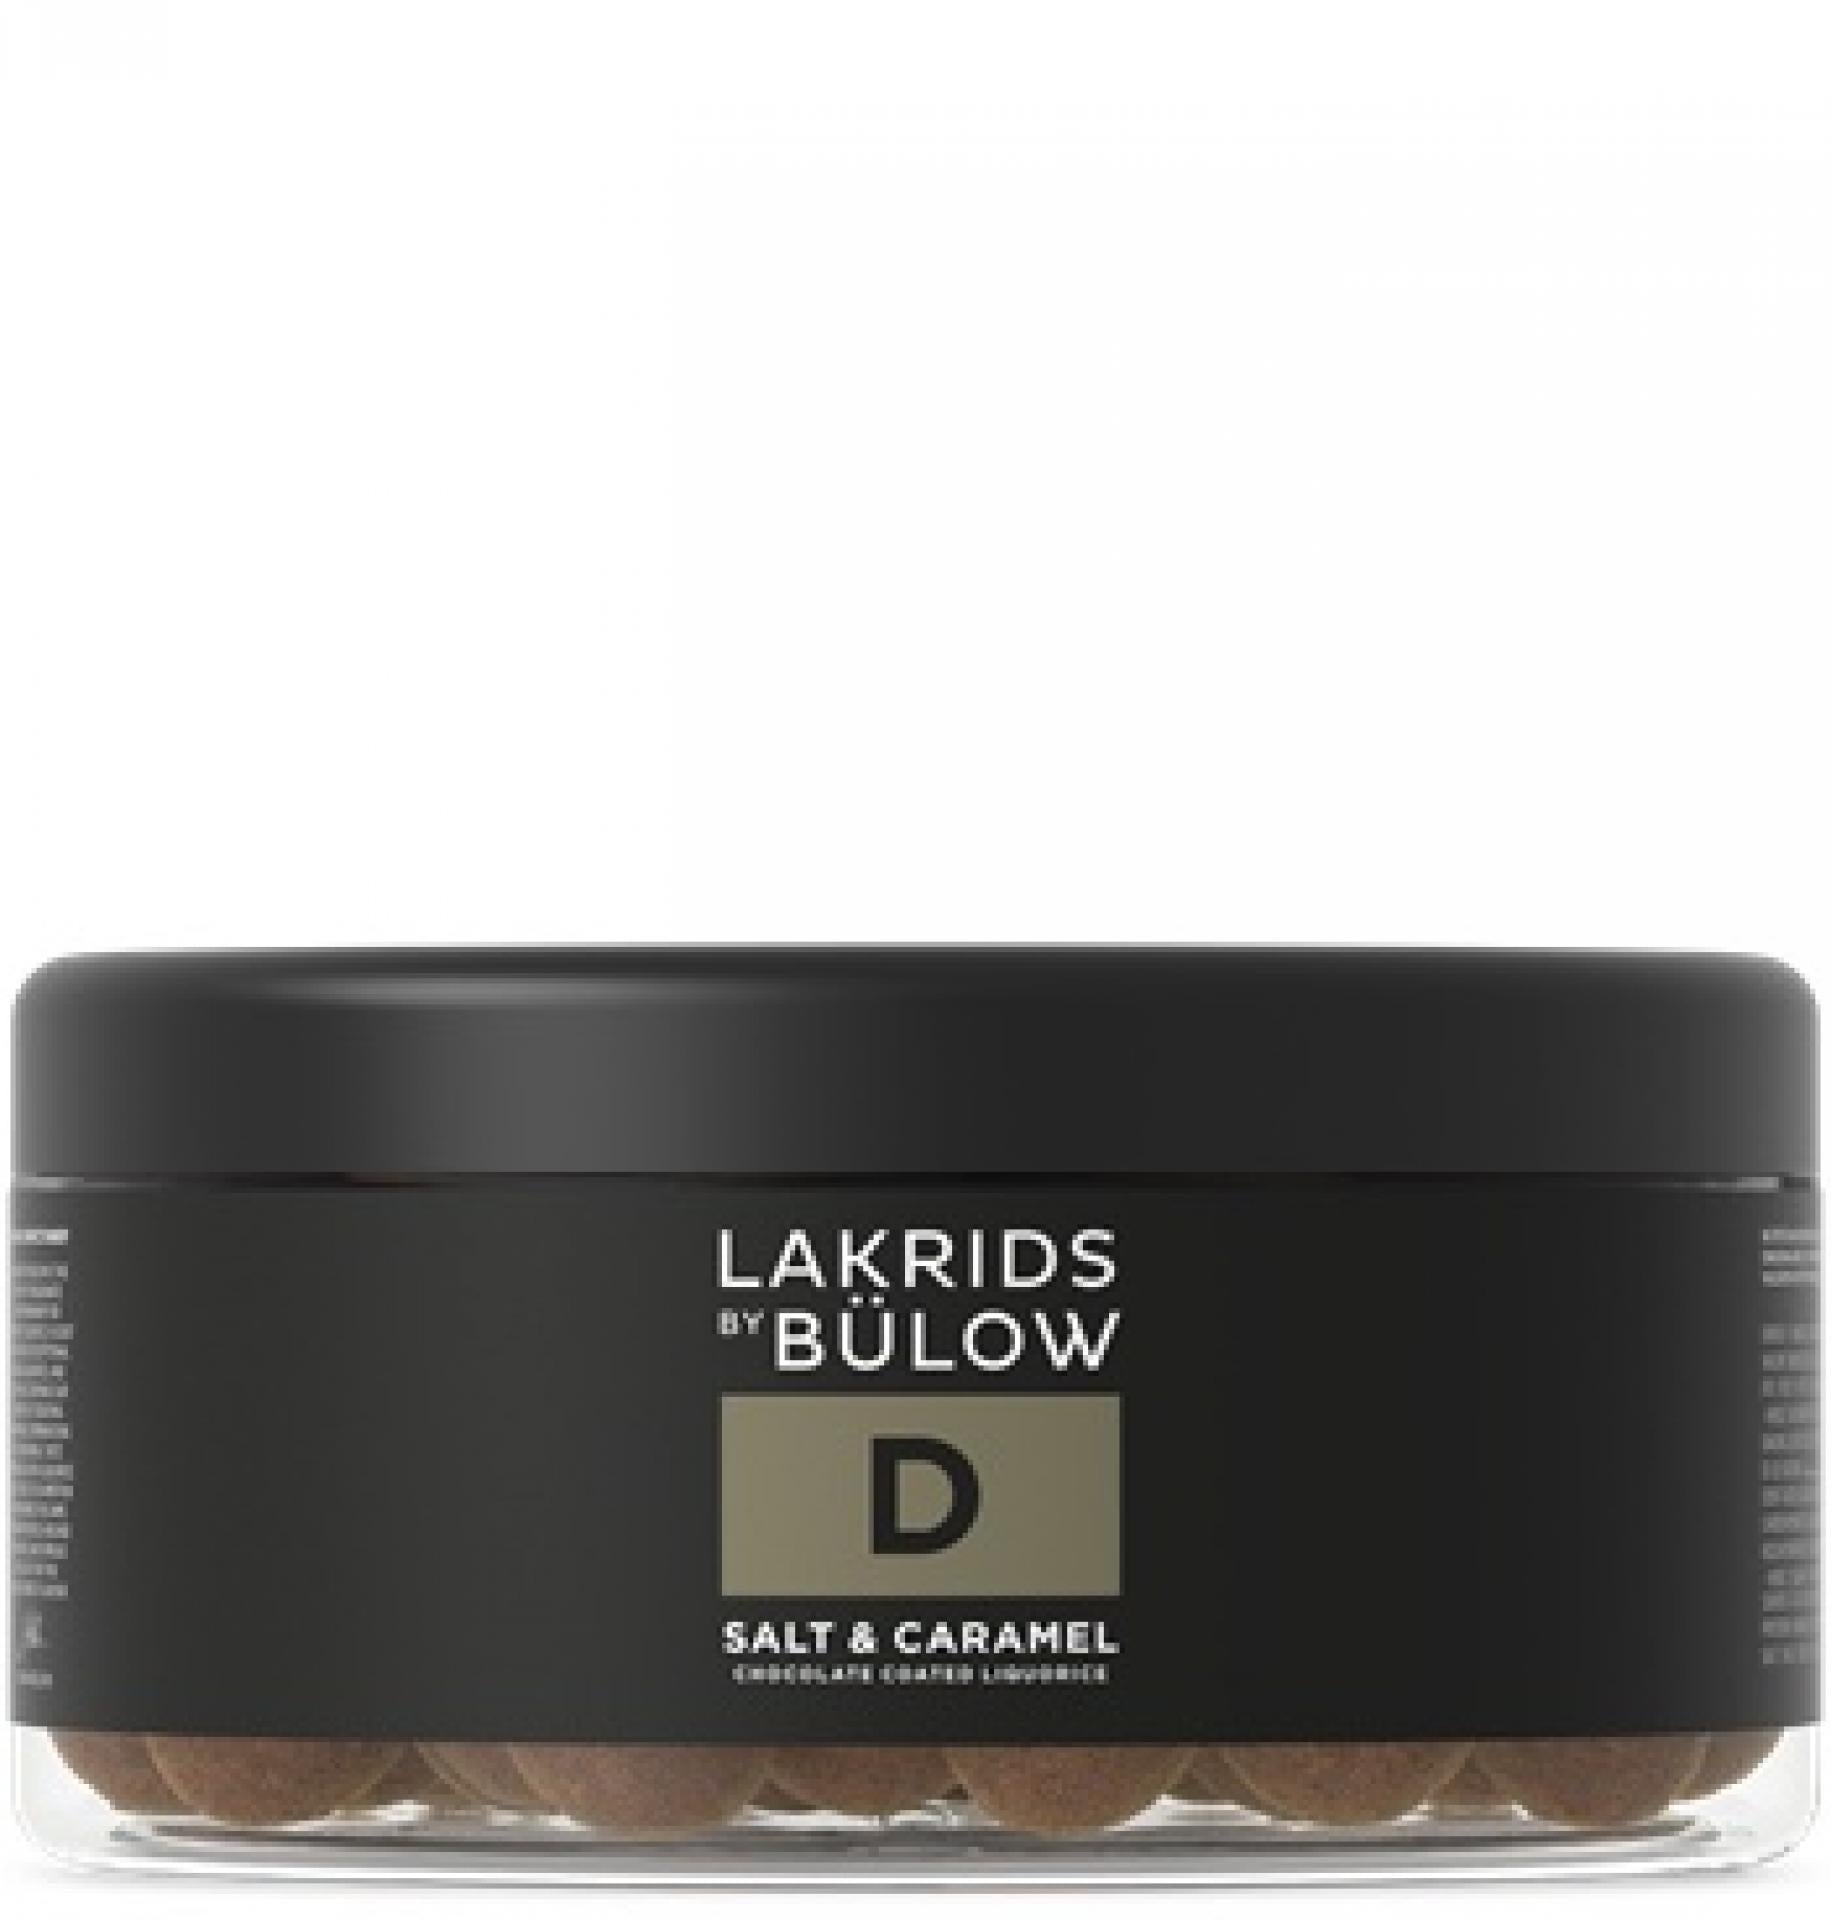 Lakrids by Bülow Large D Salt & Caramel Lakrids 550g